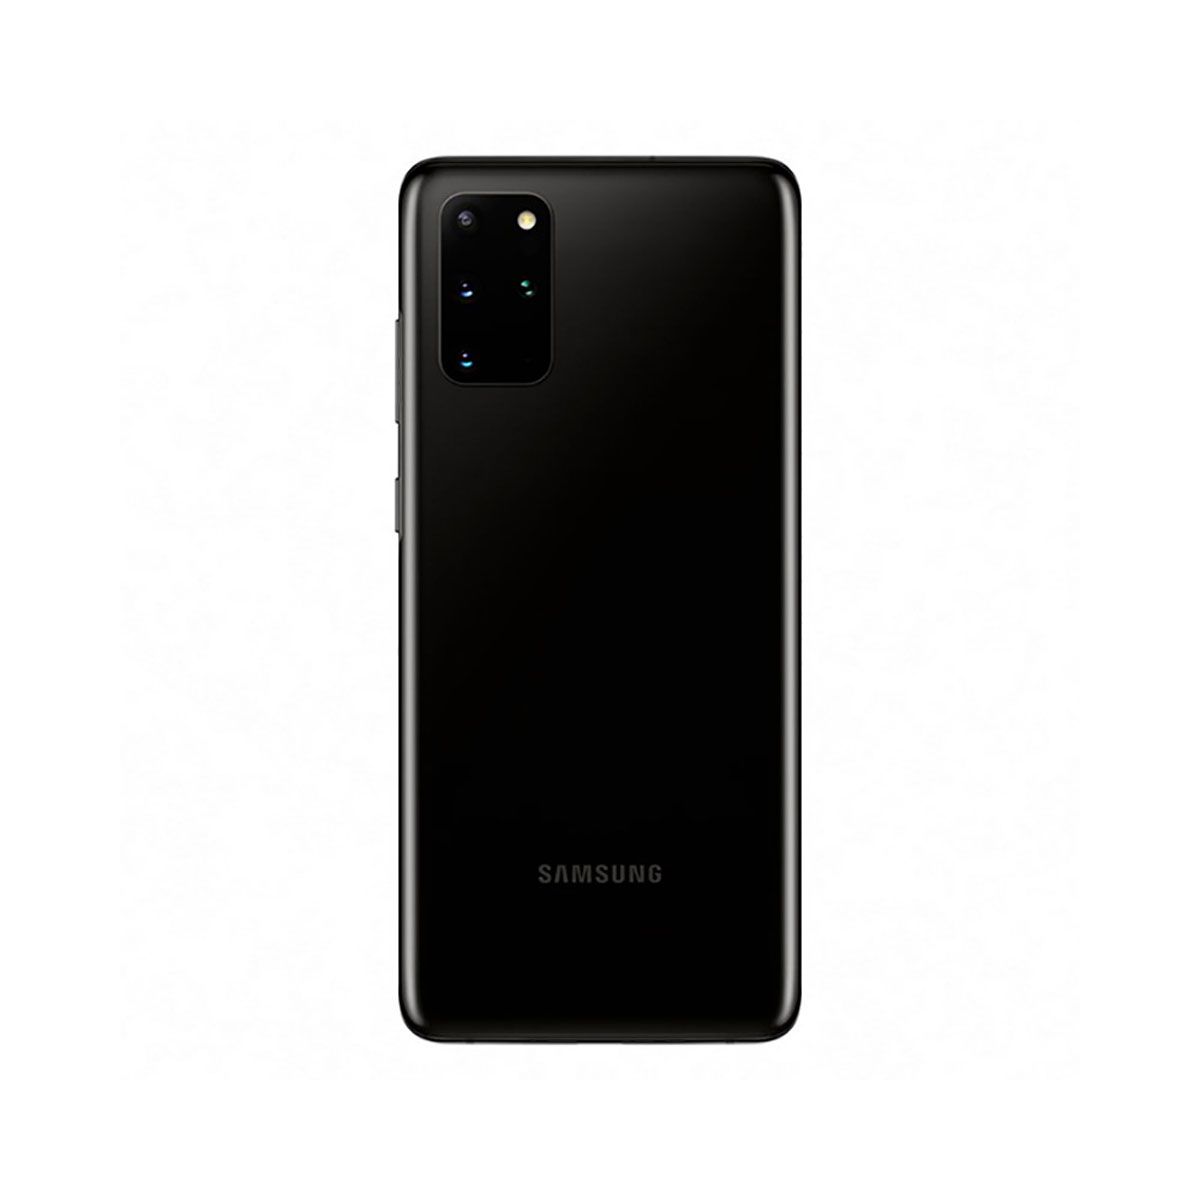 Samsung Galaxy S20 8 Go/128 Go Gris (Cosmic Grey) Dual SIM G980F Enterprise Edition